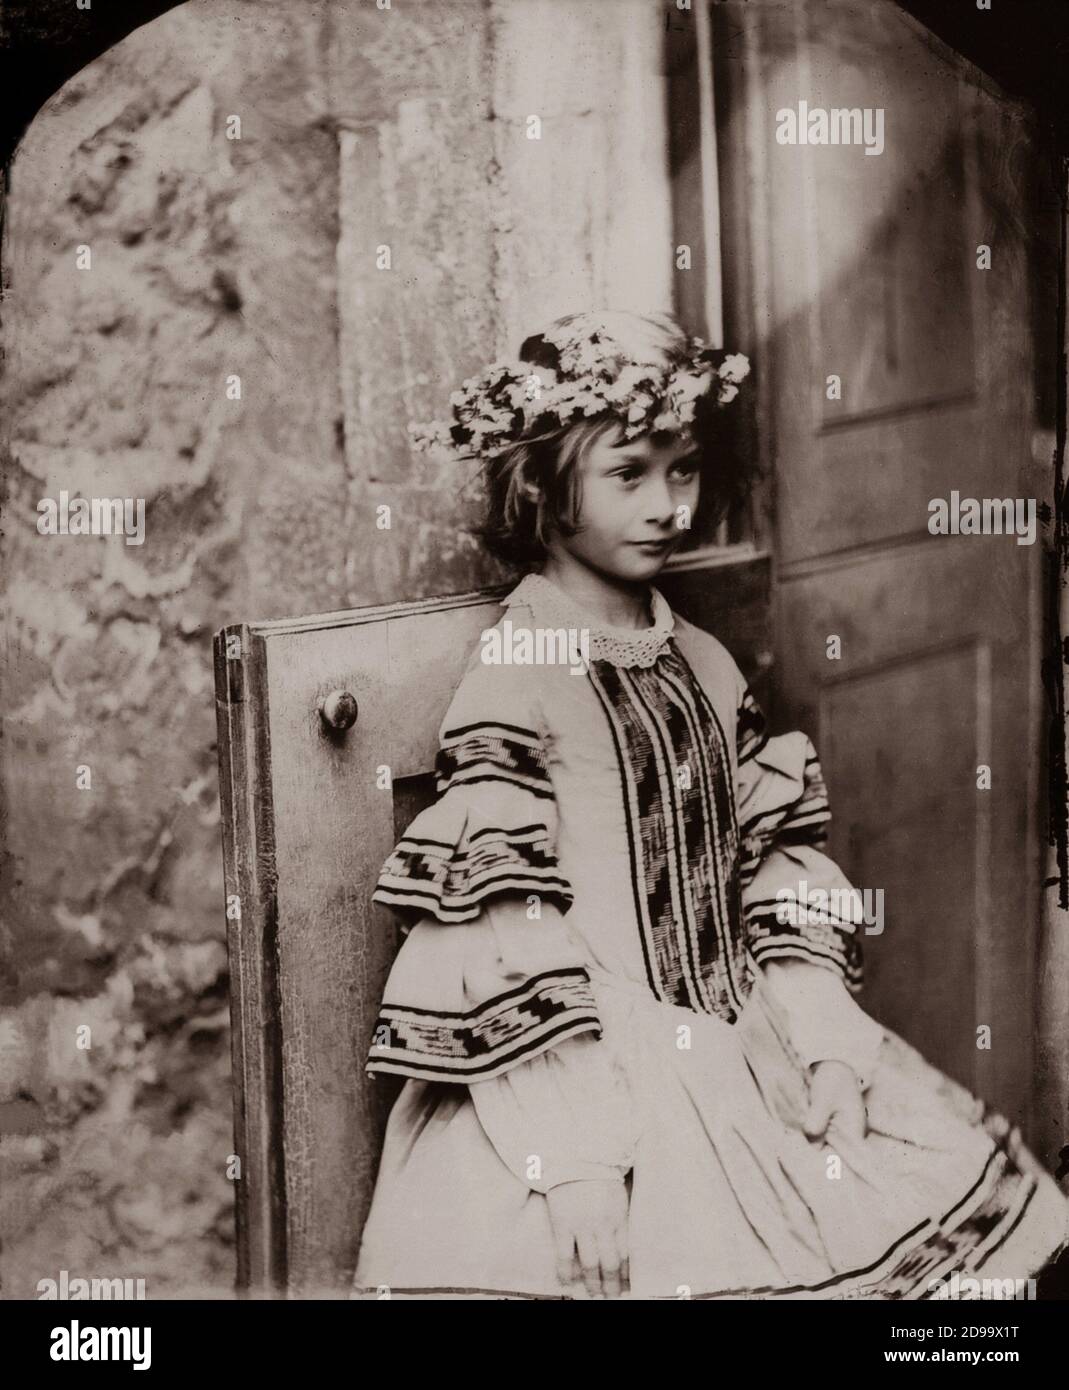 1860 , GRAN BRETAGNA : Alice Liddell , che indossa una ghirlanda ( il modello Little Muse per ALICE NEL PAESE DELLE MERAVIGLIE - 1865 ), ritratto dal fotografo, matematico e scrittore LEWIS CARROLL ( nato Charles Lutwidge Dodgson , 1832 - 1898 ) - LETTERATURA - LETTERATURA - SCRITTORE - bambina - ritratto - ritratto - bambino - personalità da giovani bambini - personalità bambino - EPOCA VITTORIANA - fiori - fiori ---- Archivio GBB Foto Stock